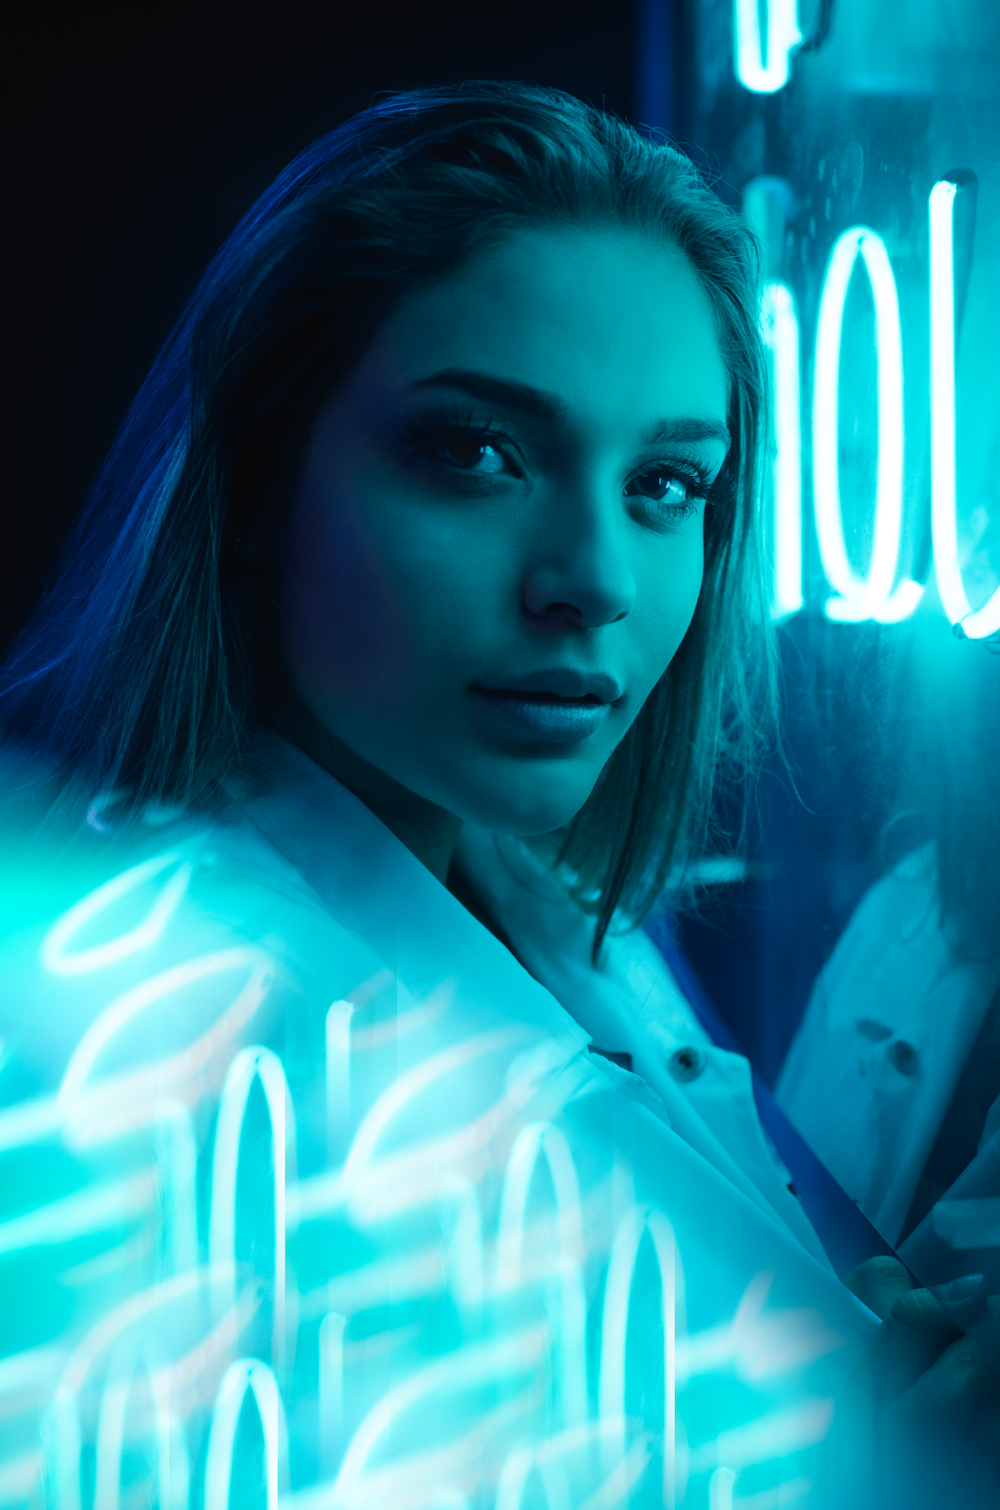 foto ravvicinata di donna vicino alla segnaletica luminosa al neon